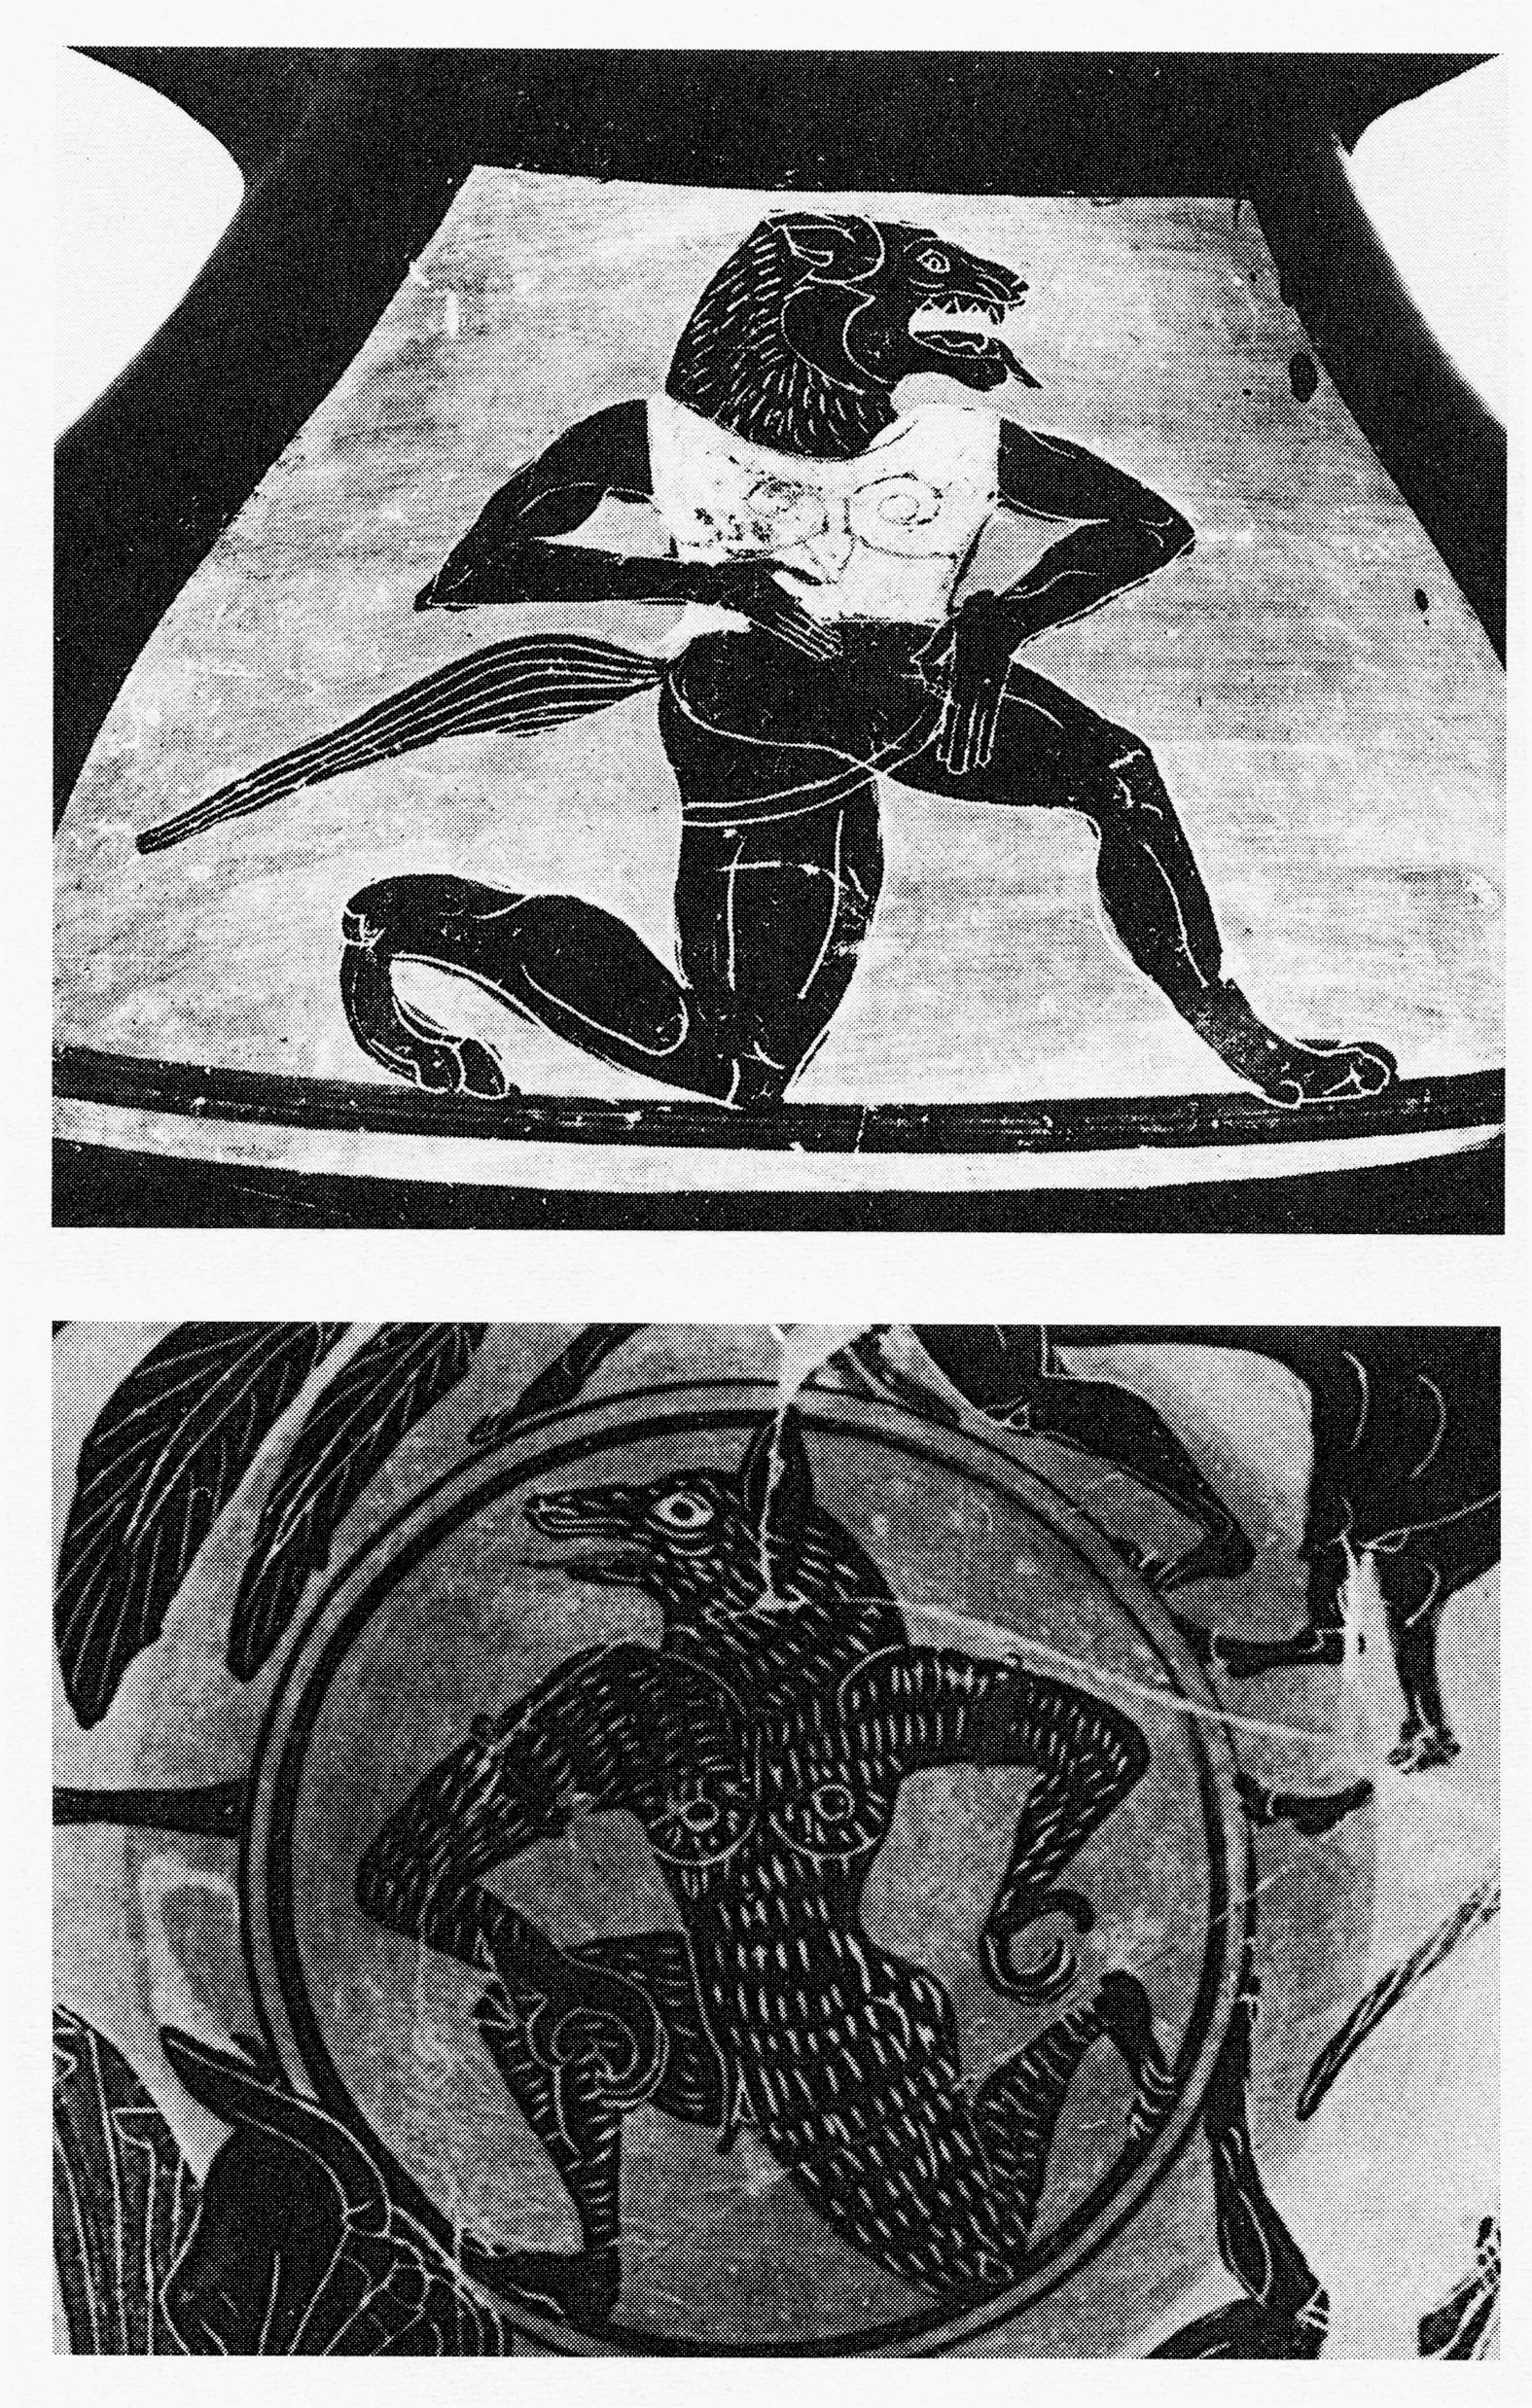 Wolfsmenschen mit Brüsten auf etruskischen Vasen etwa um 600 v. Chr.